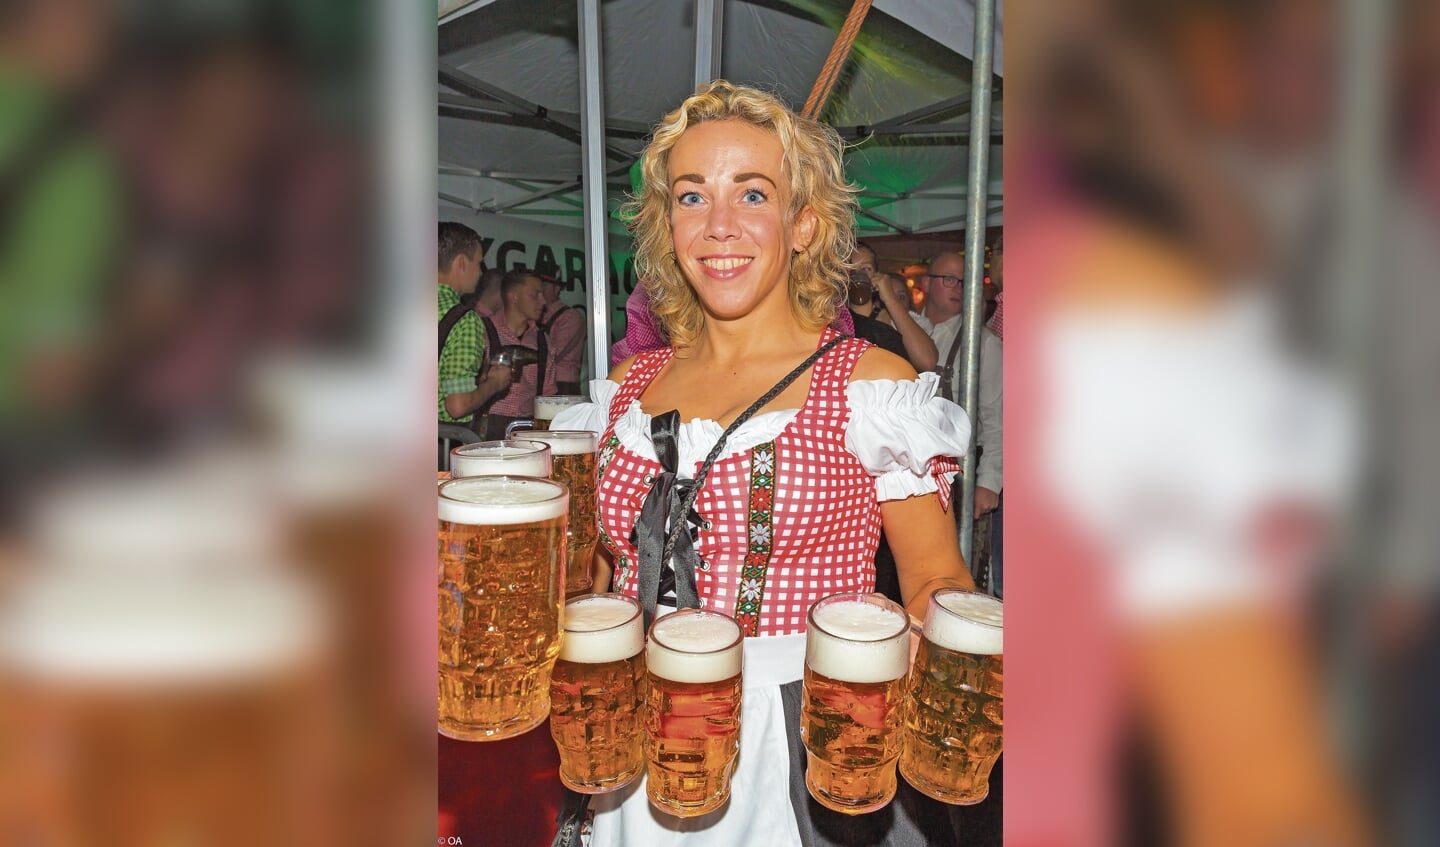 Die Platz was in een mum van tijd omgetoverd in een klein Tirol, compleet met mensen in klederdracht en pullen bier.